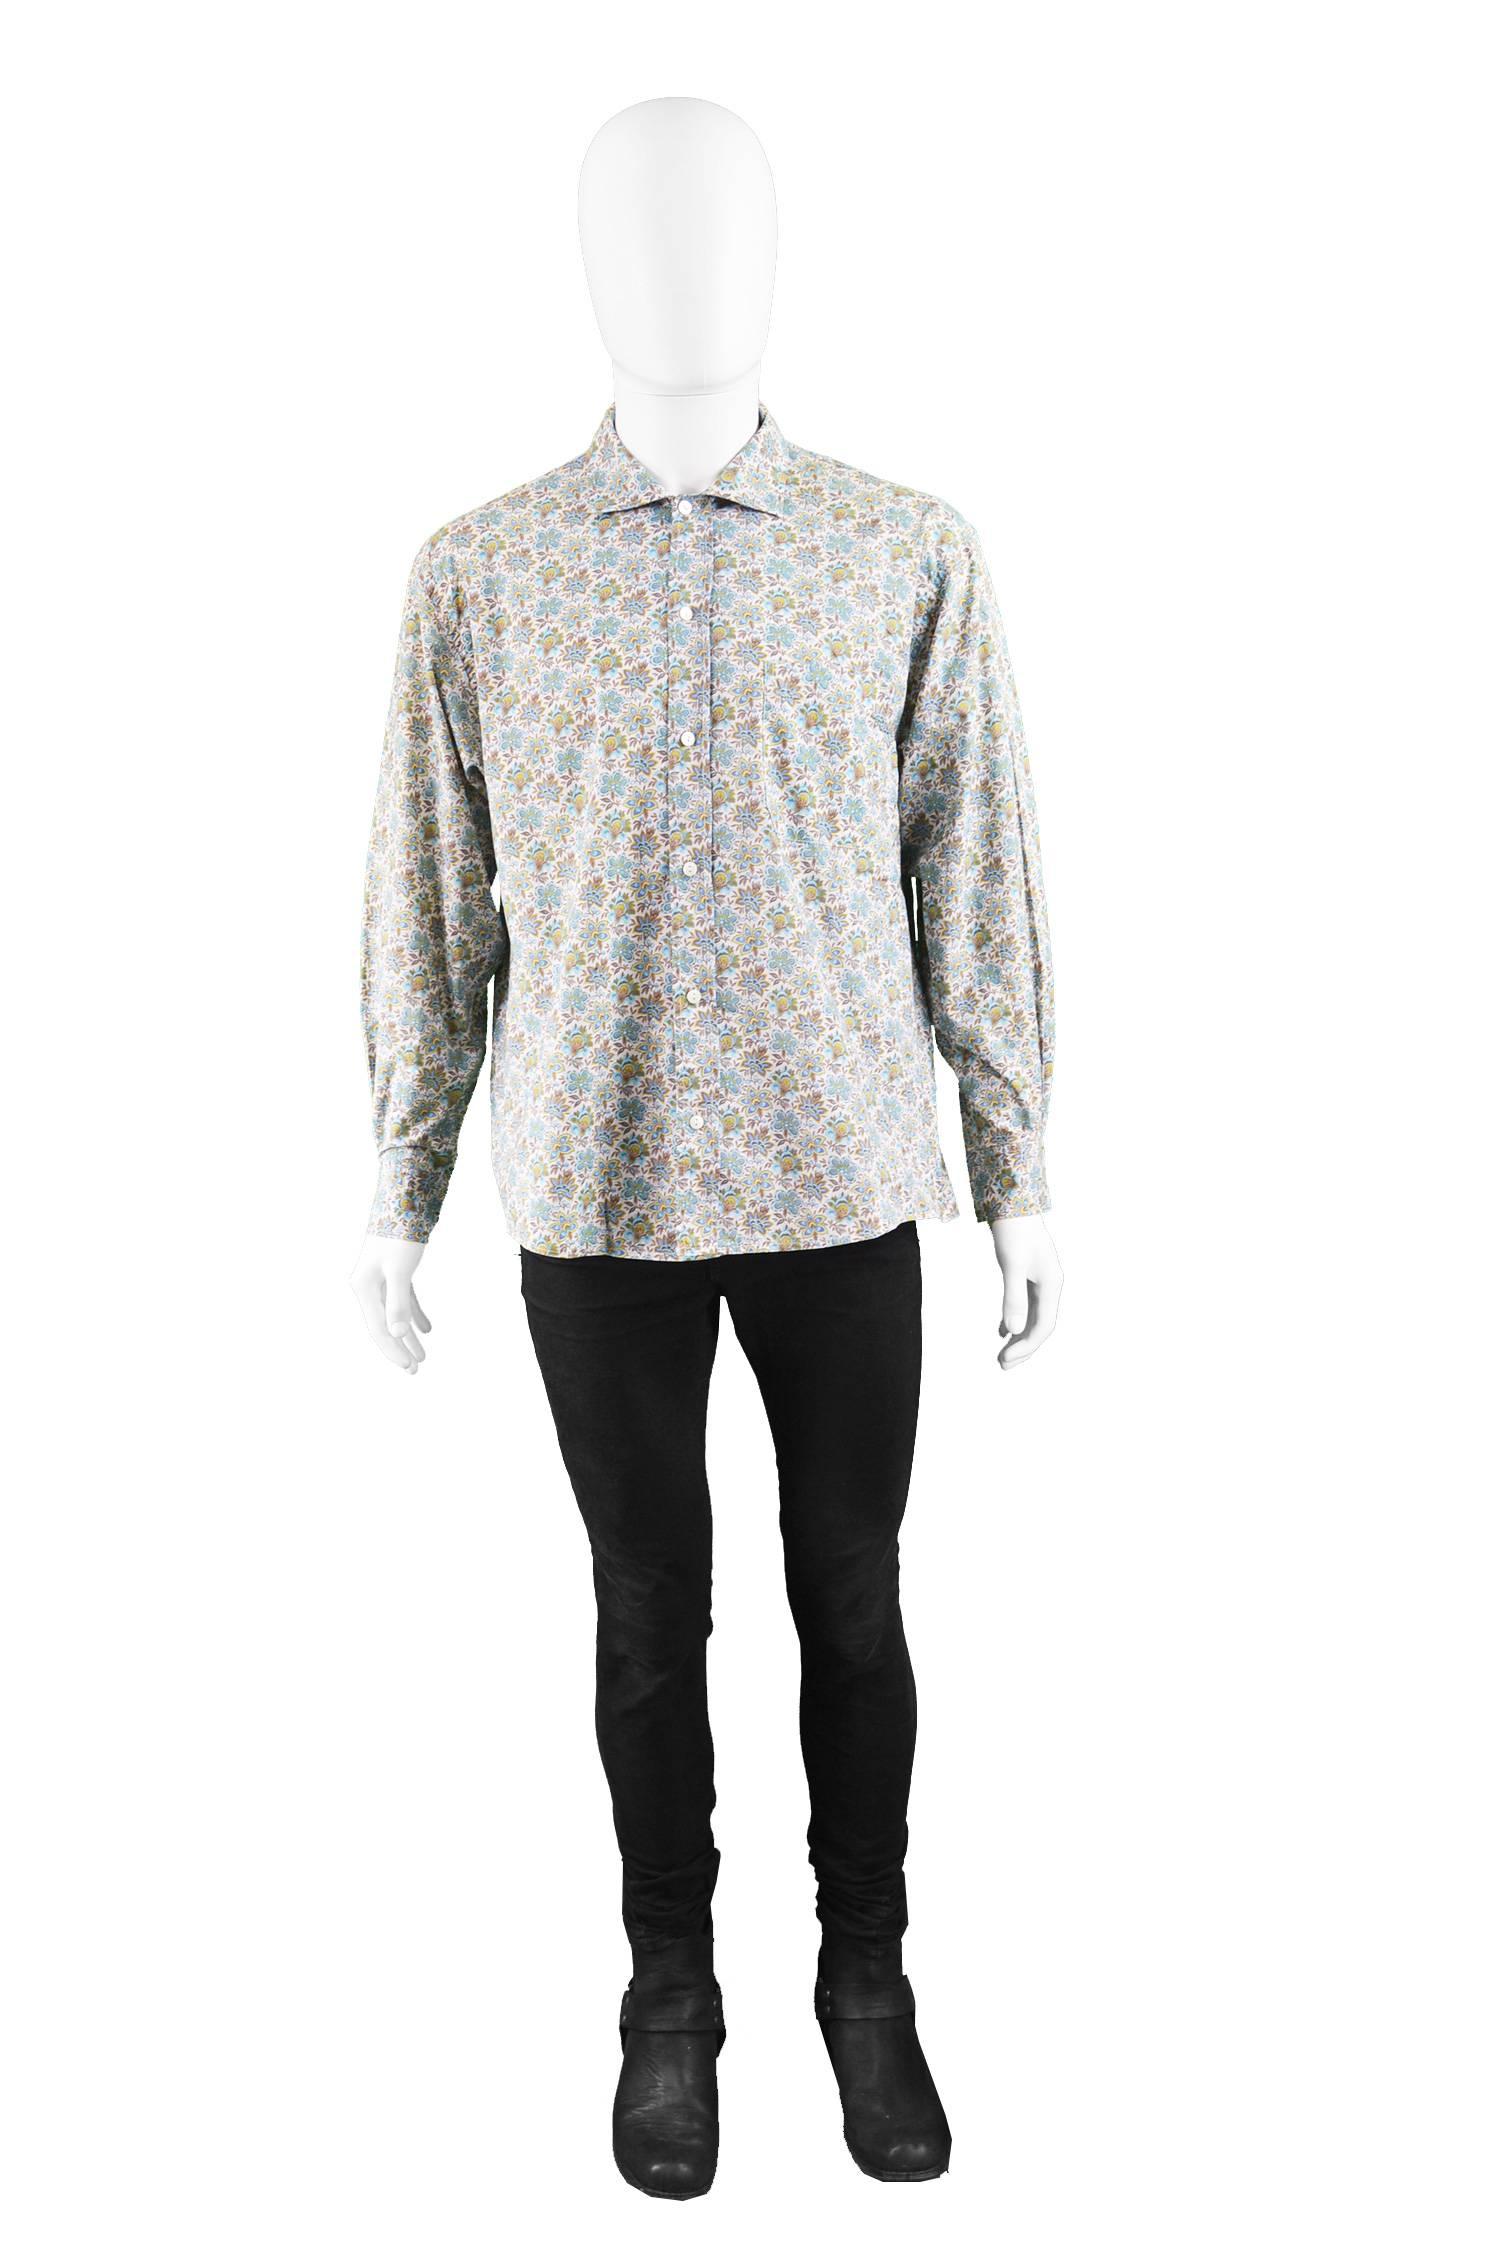 Kenzo Paris Mens Vintage Floral Print Cotton Button Up Shirt, 1990s

Estimated Size: Men's Large but has an intentional looser, relaxed fit. 
Chest - 44” / 112cm
Waist - 44” / 112cm
Length (Shoulder to Hem) - 26” / 66cm
Shoulder to Shoulder - 20” /